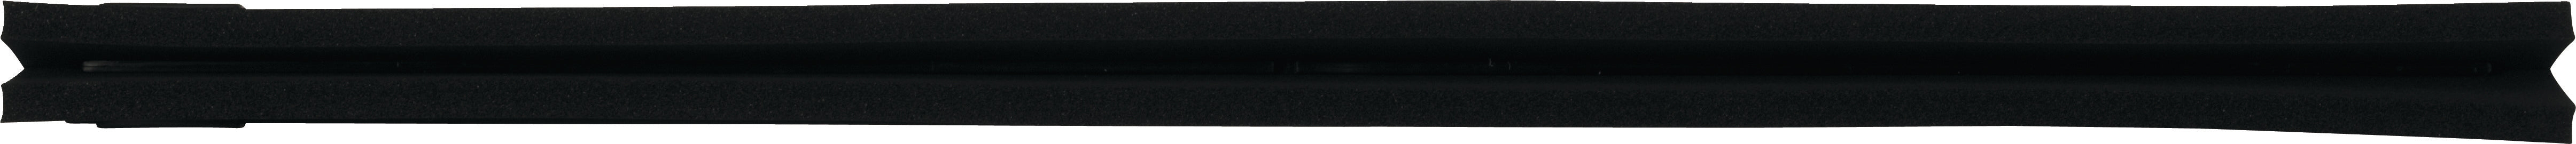 Vikan zwarte cassette 60 cm met duimgreep